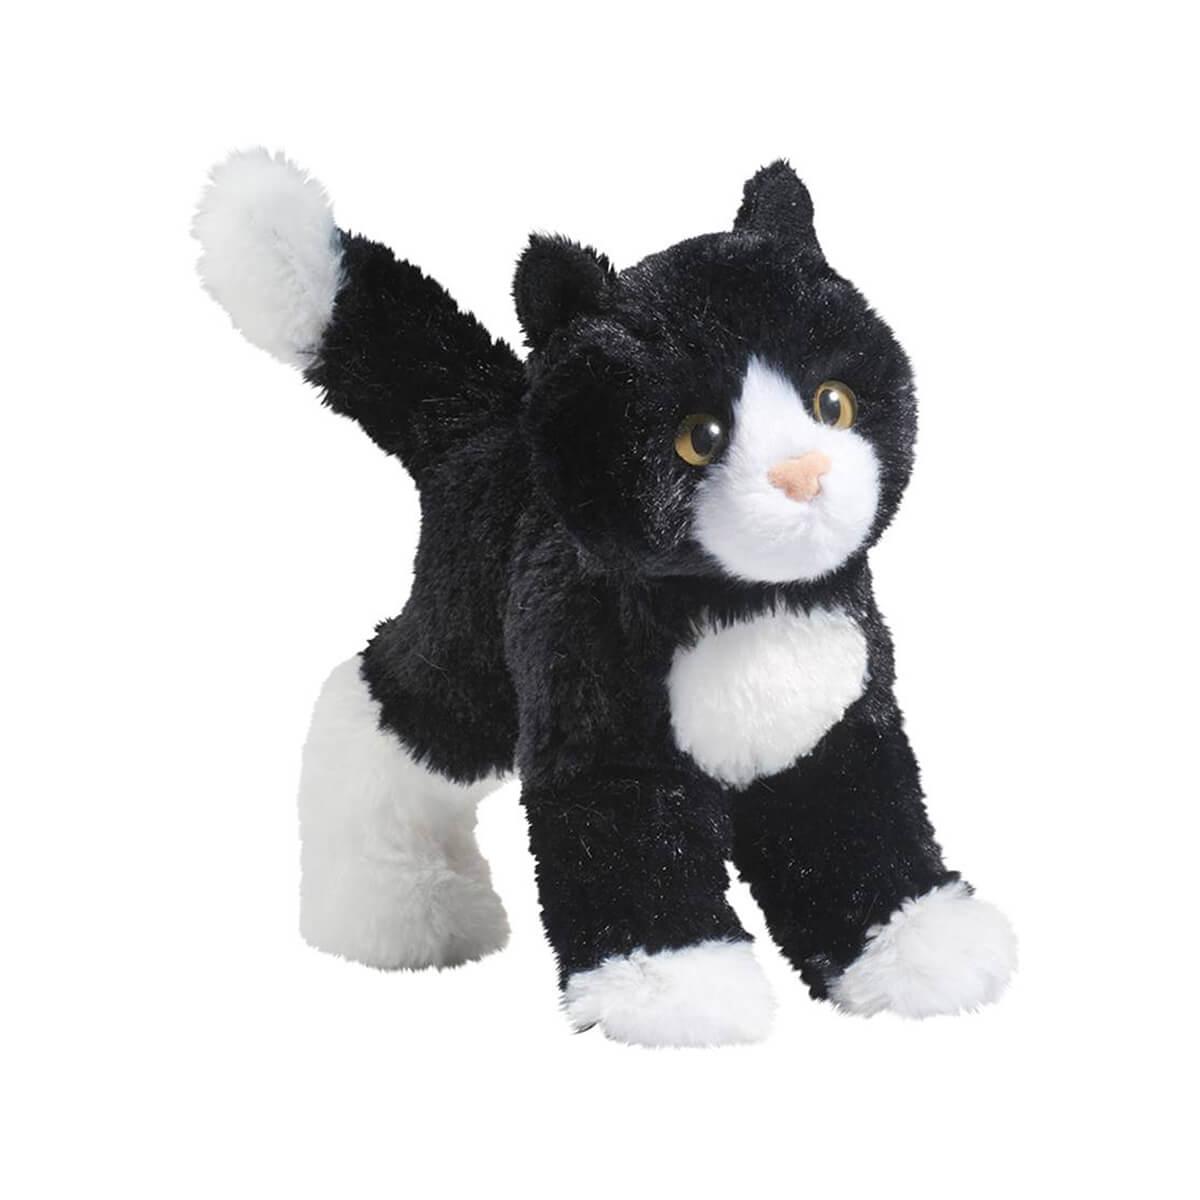  Snippy Black & White Cat Plush Toy